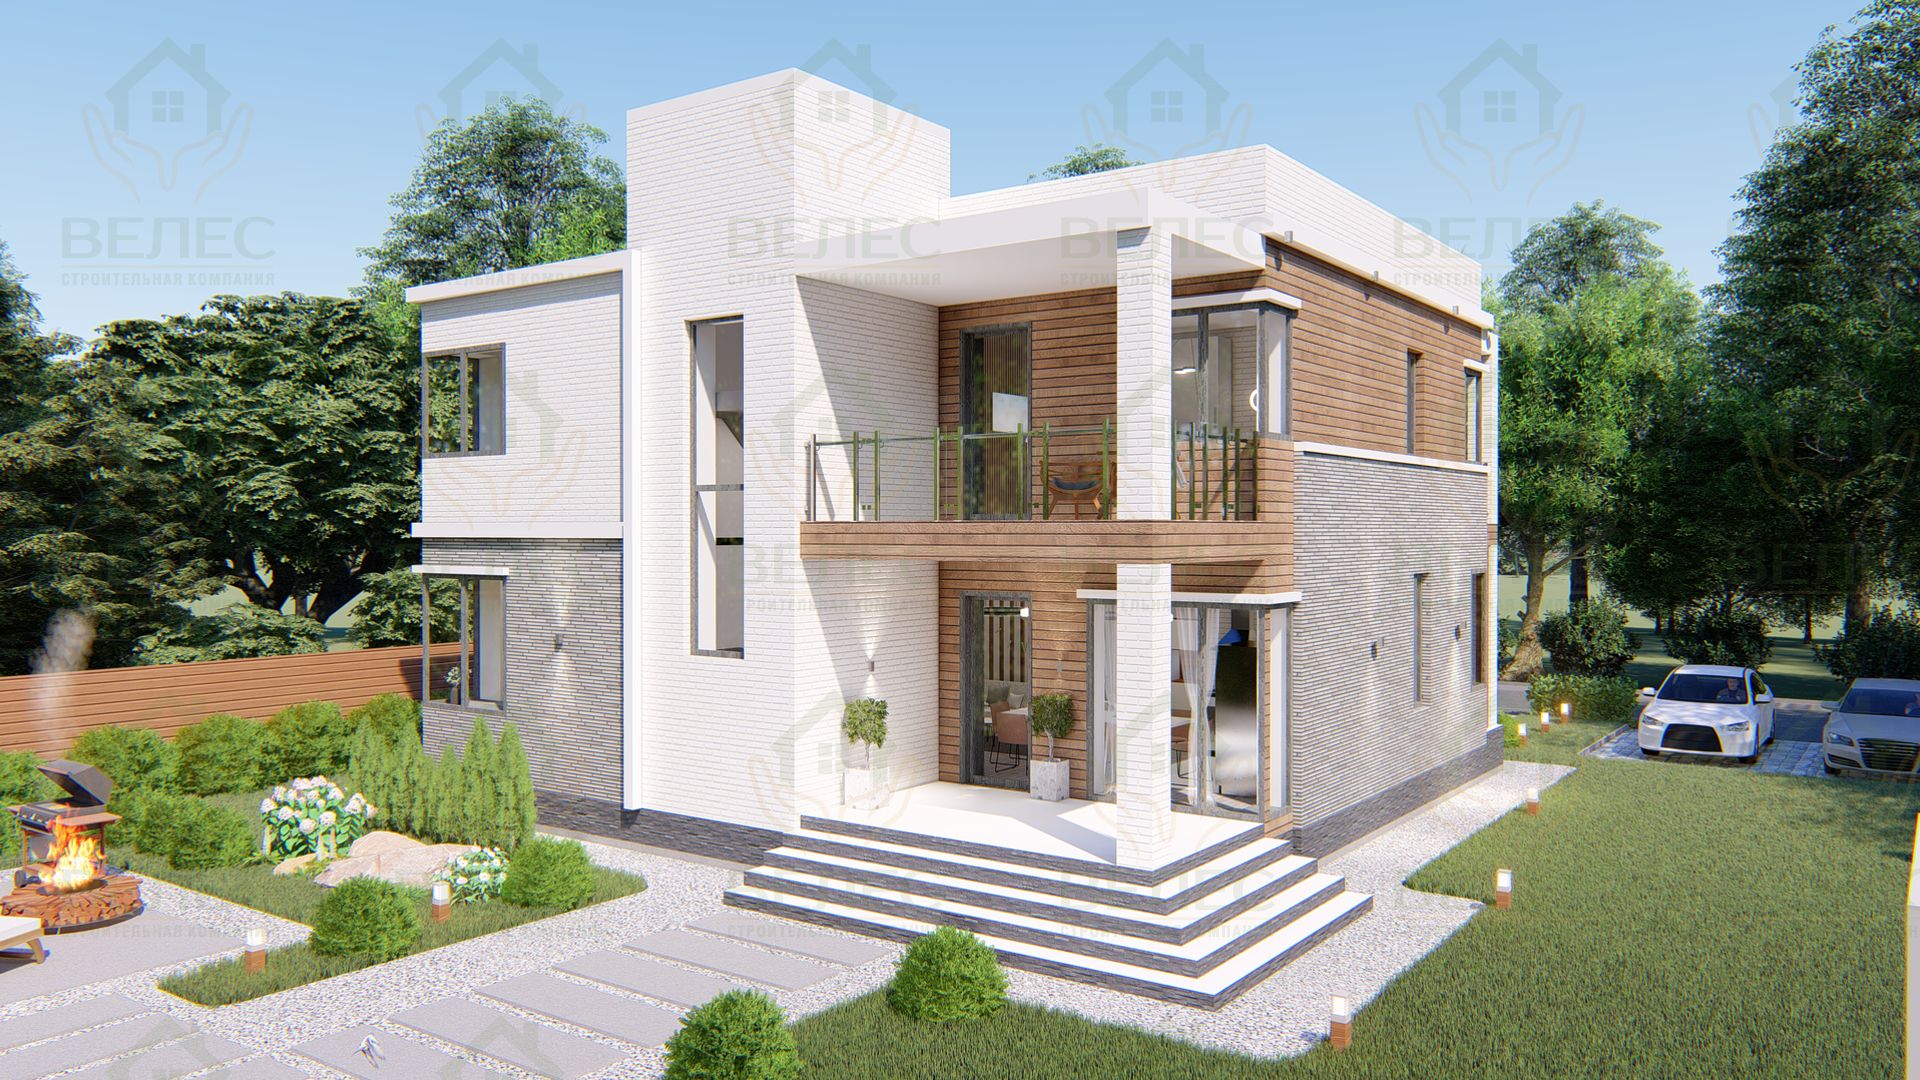 Построим дом 7х9 в стиле хай-тек с гарантией 10 лет и оплатой по факту выполненных работ!